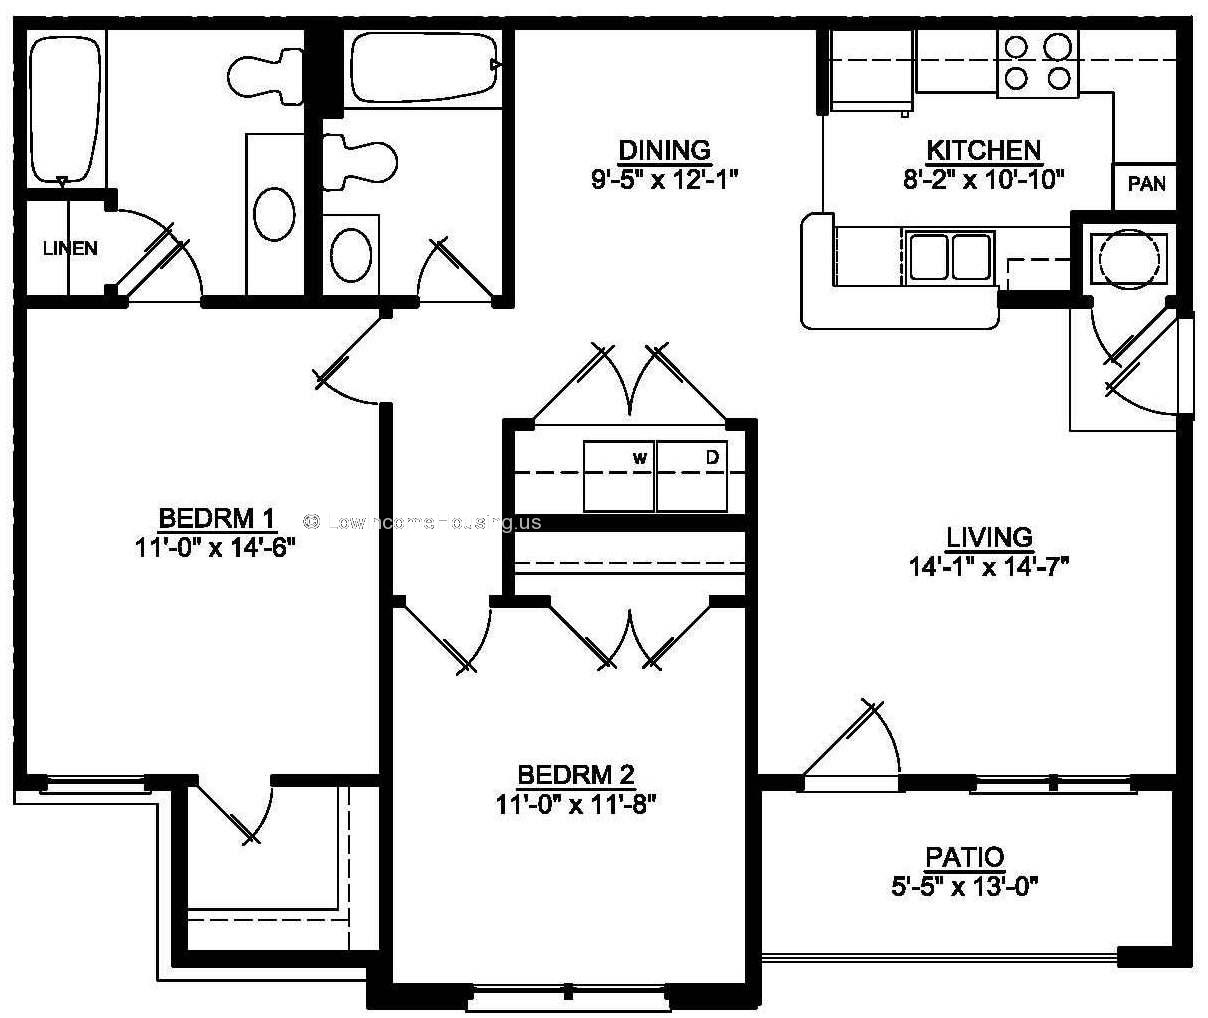 bedroom1 (11'x14') bedroom 2 (11' x 12') Living room (14' x 4') External Patio (5'x13')